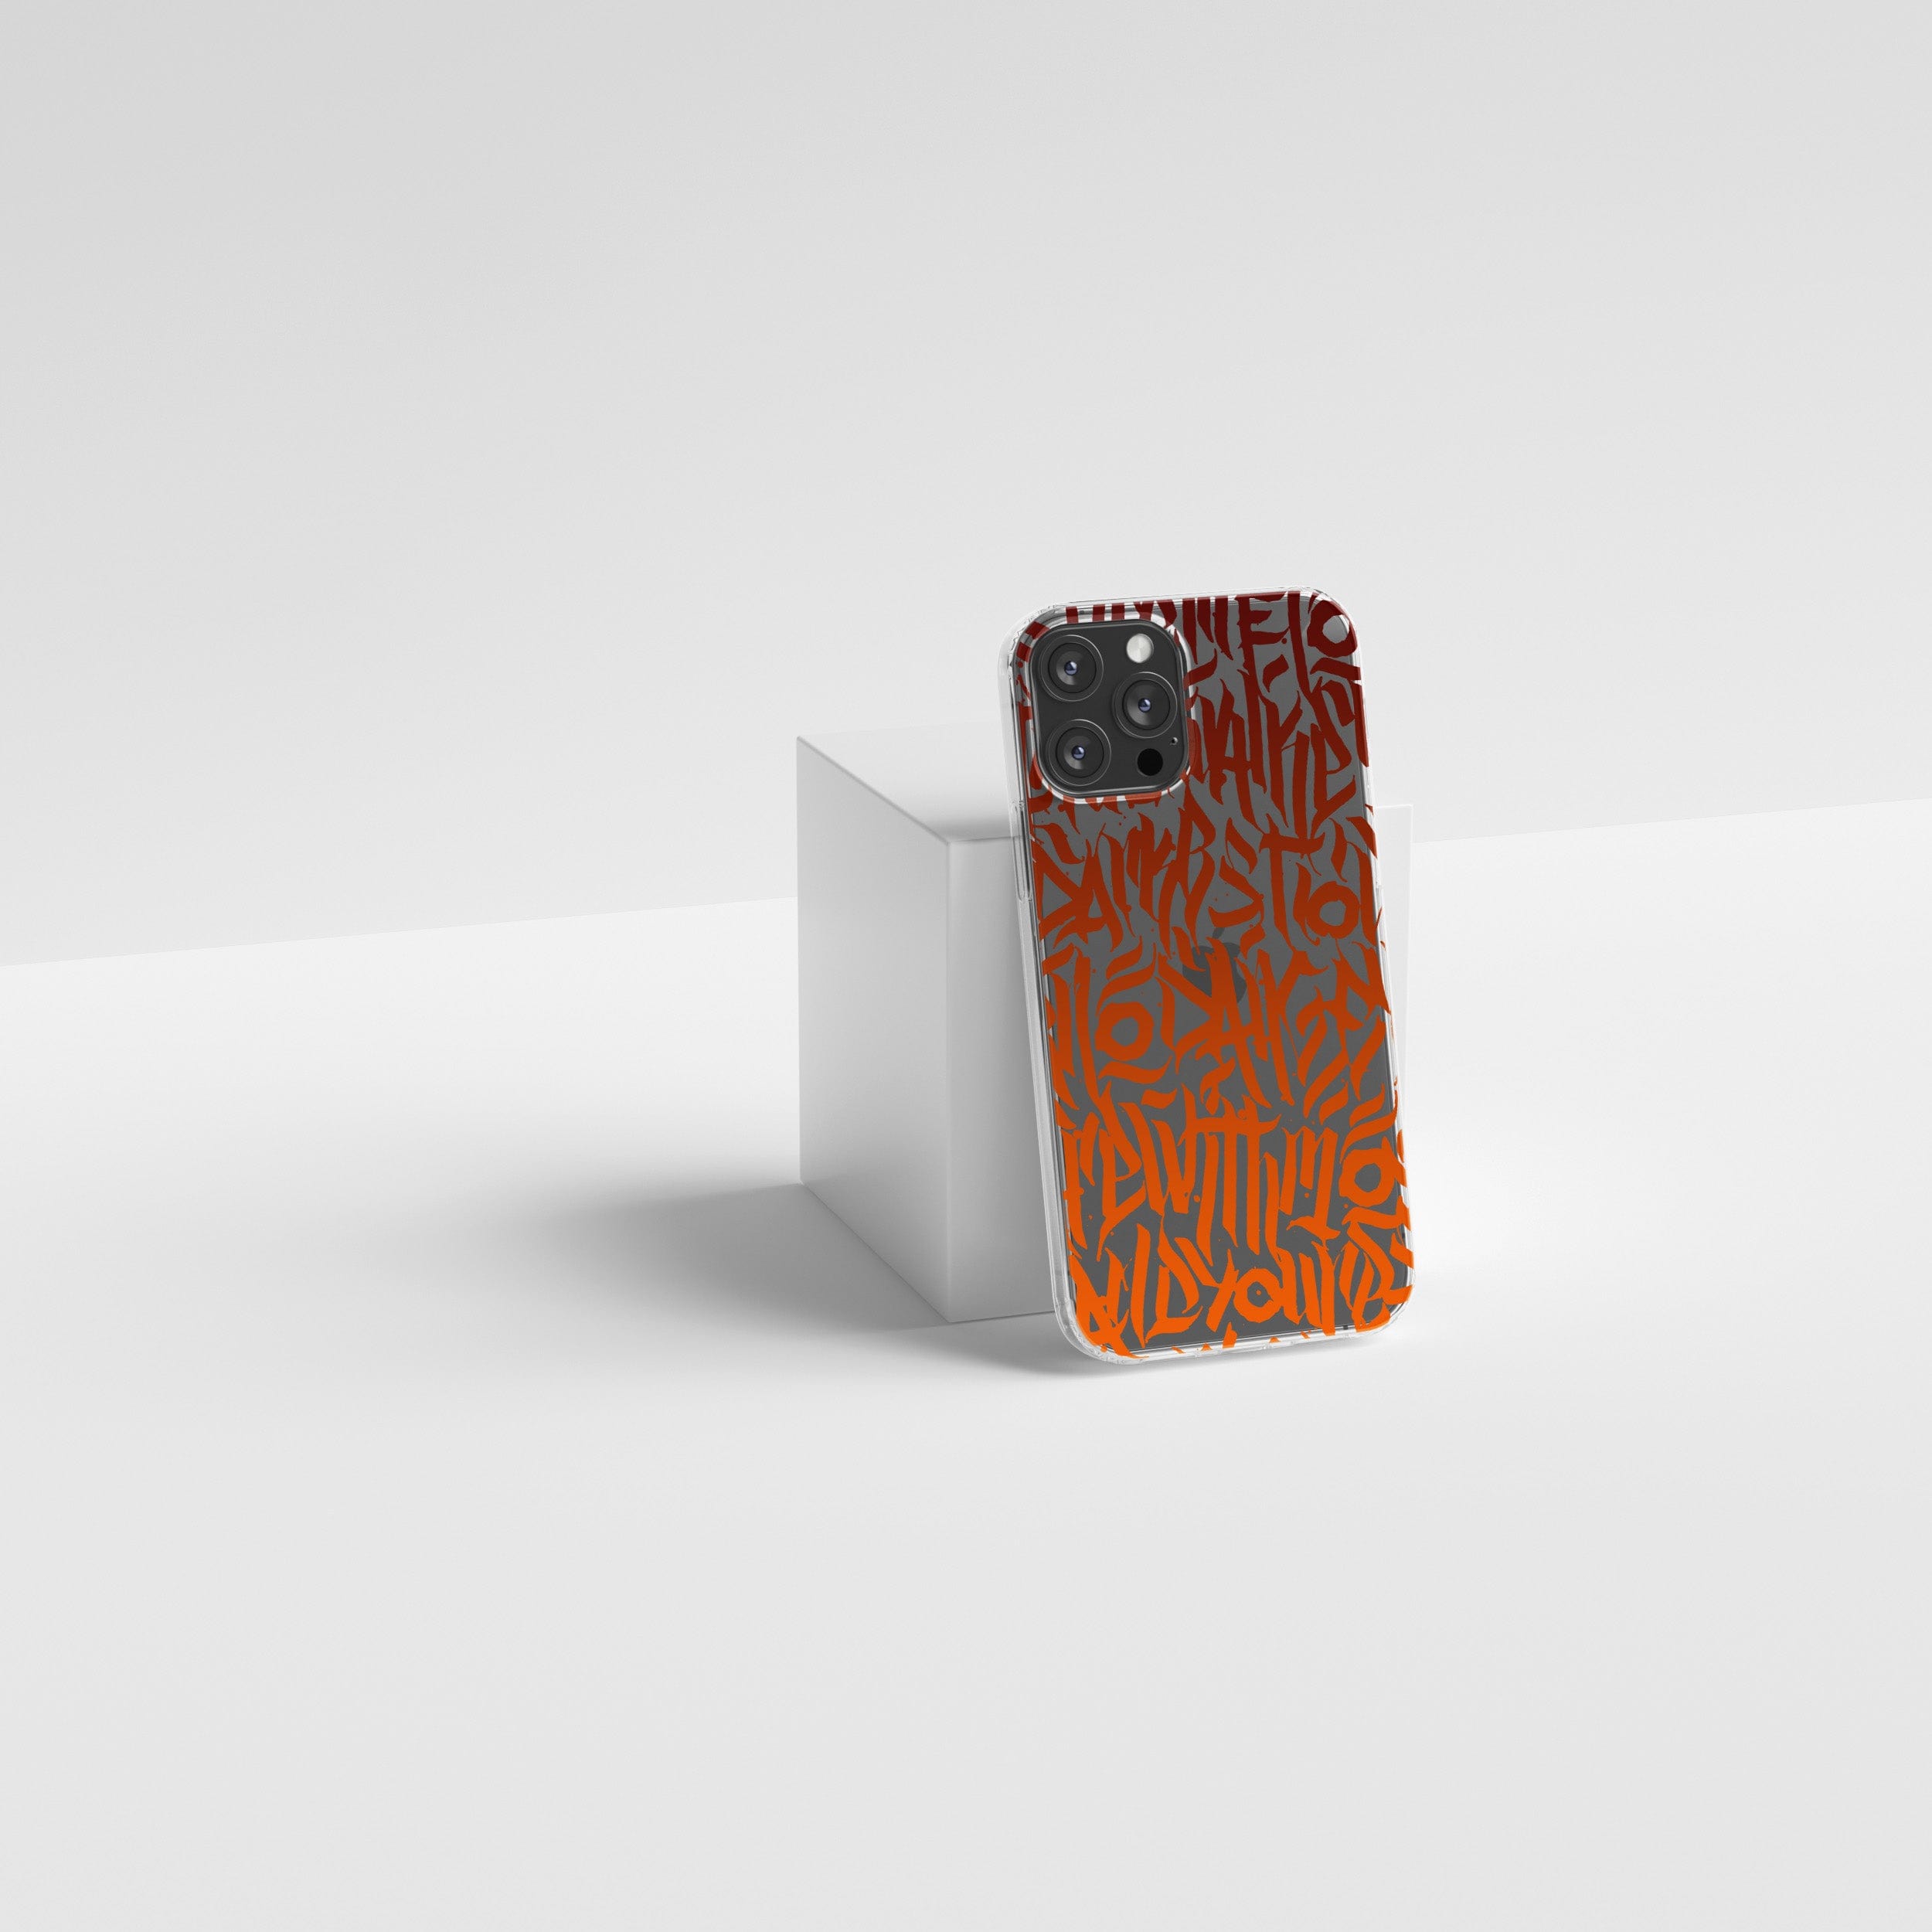 Transparent silicone case "Orange graffiti"